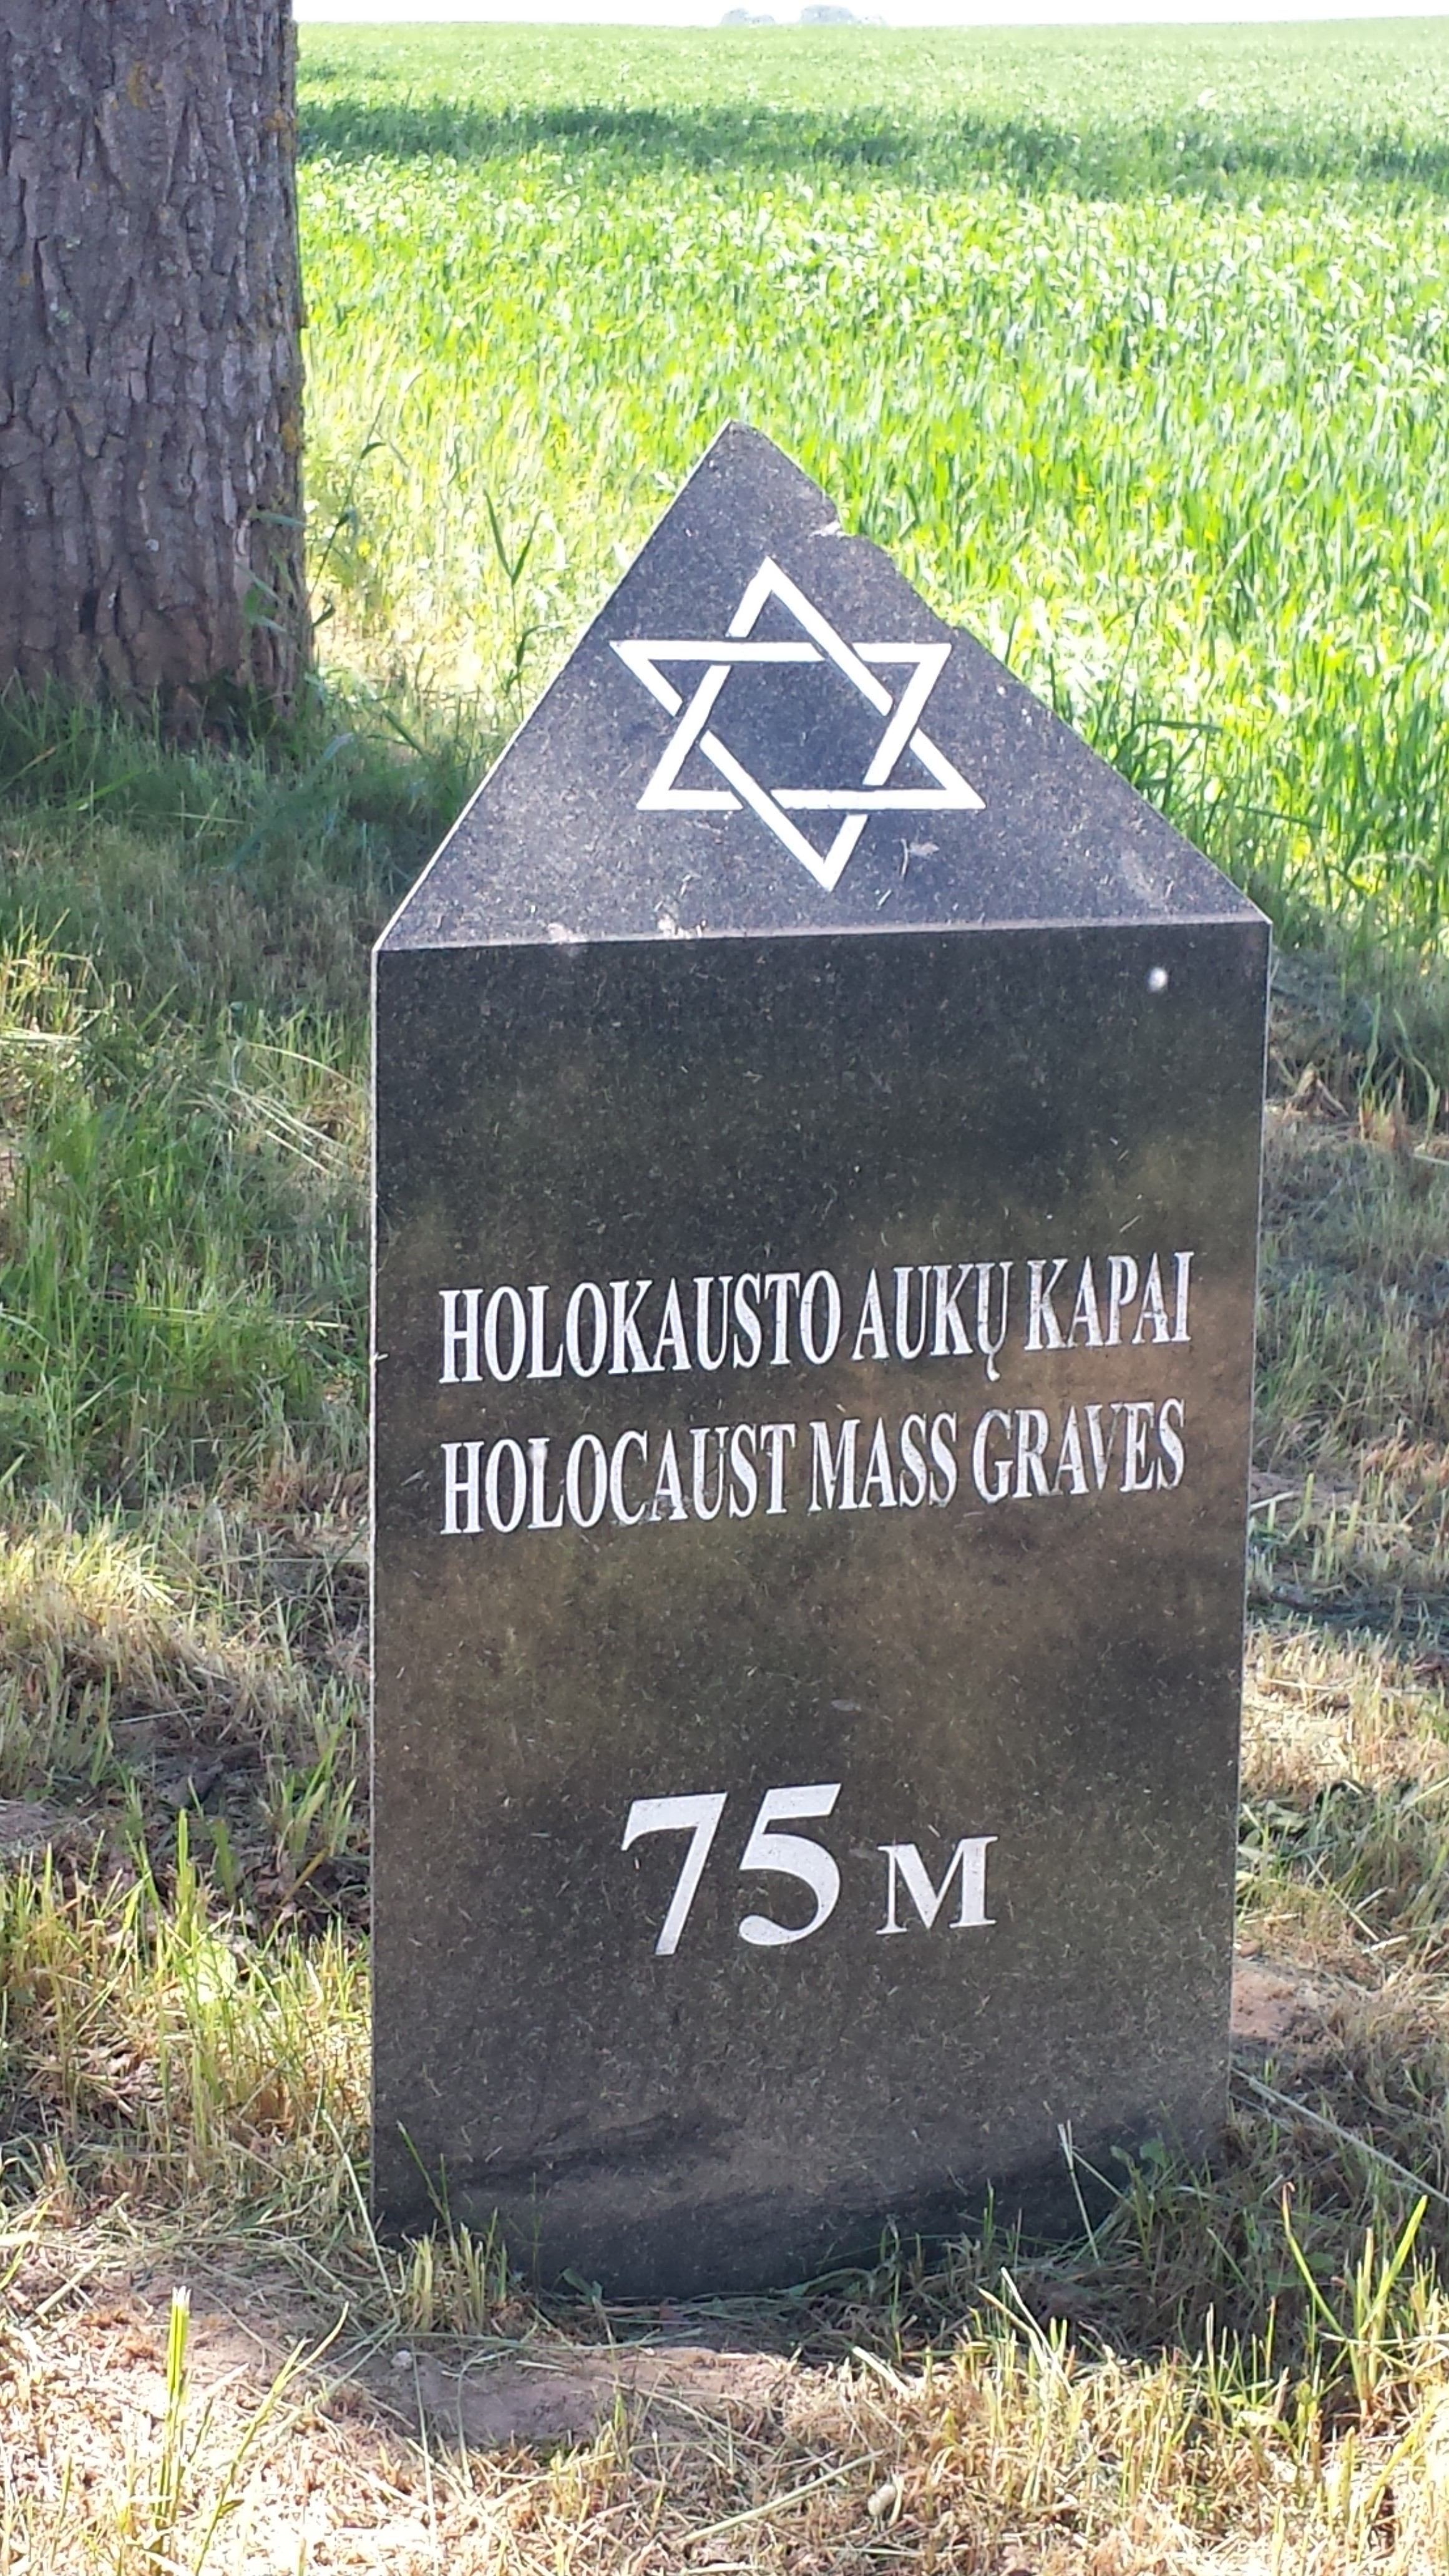 Vilkaviškis Kybartai holokausto auku kapai